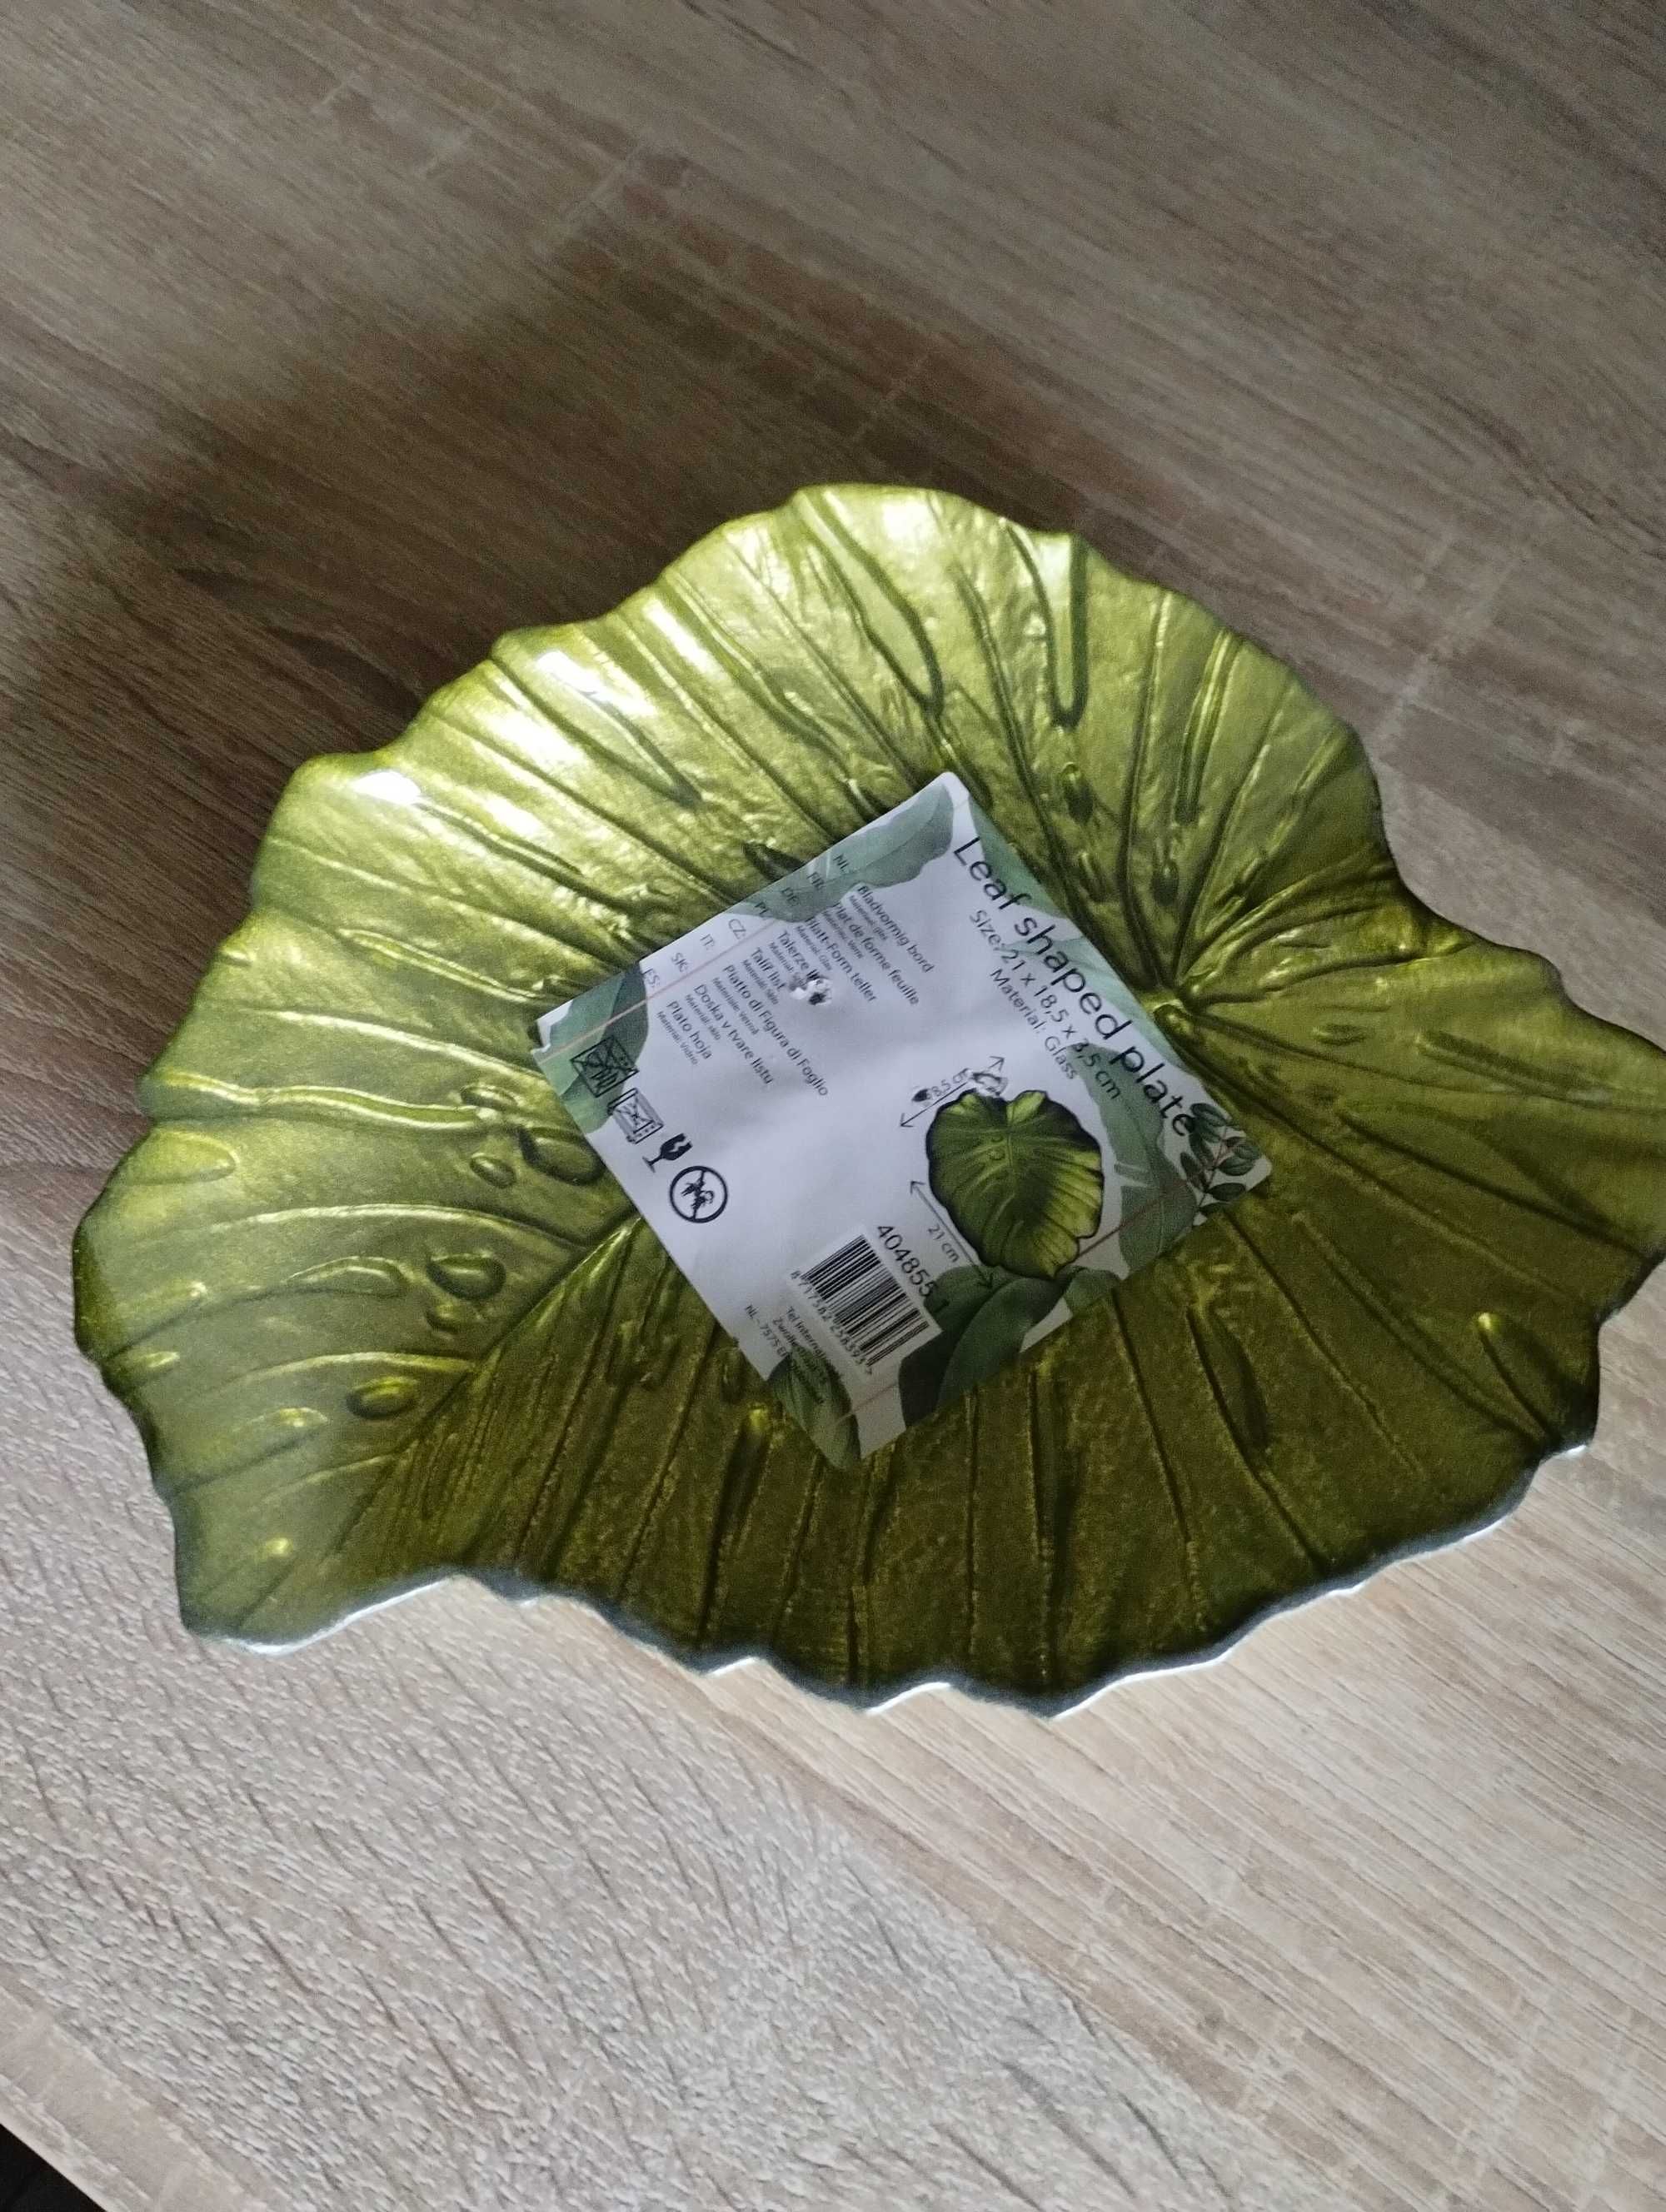 Nowy ozdobny talerz w kształcie liścia